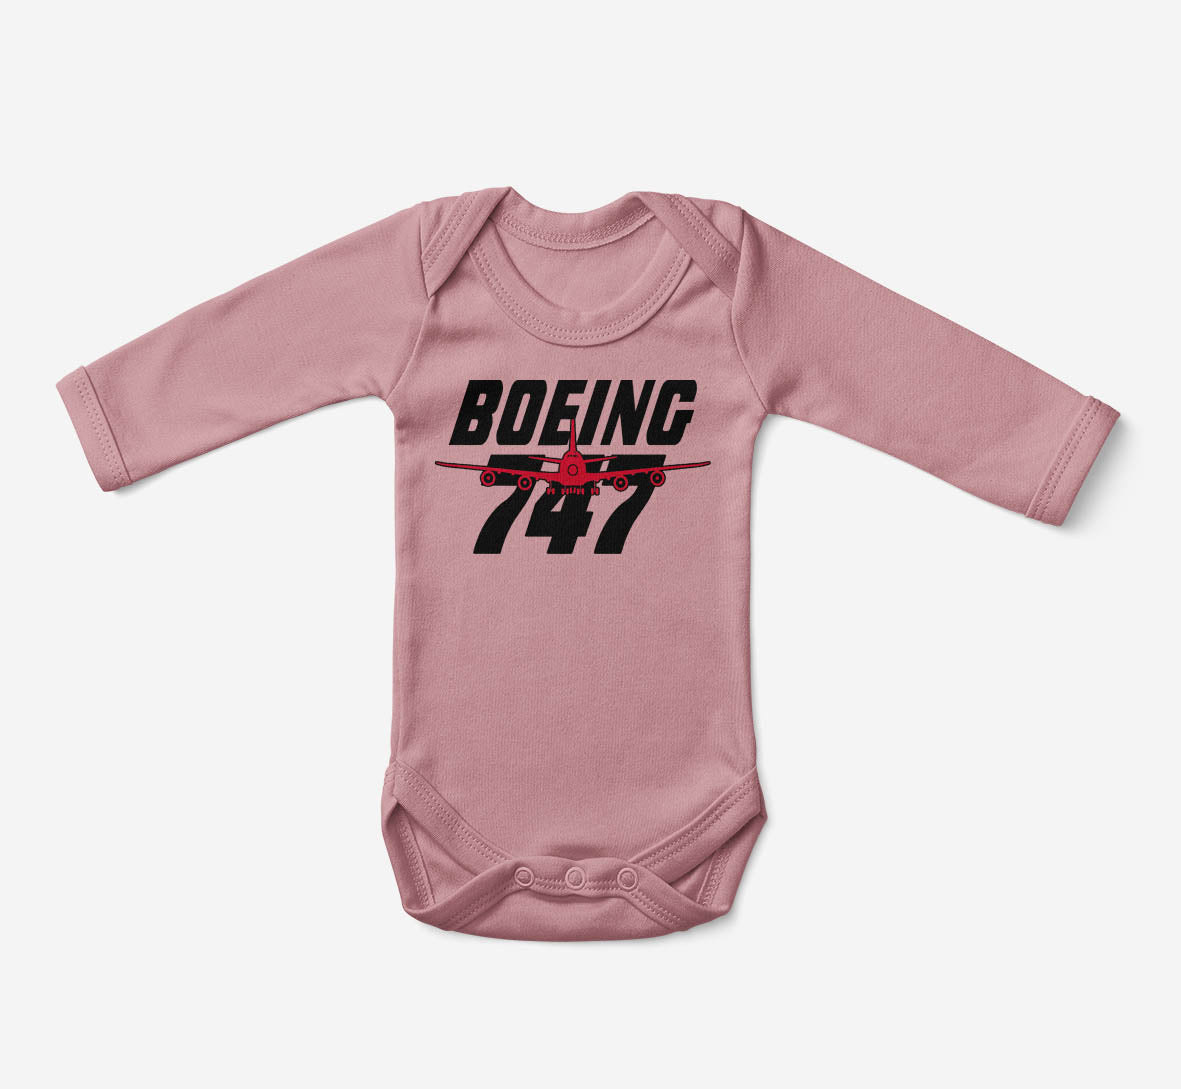 Amazing Boeing 747 Designed Baby Bodysuits